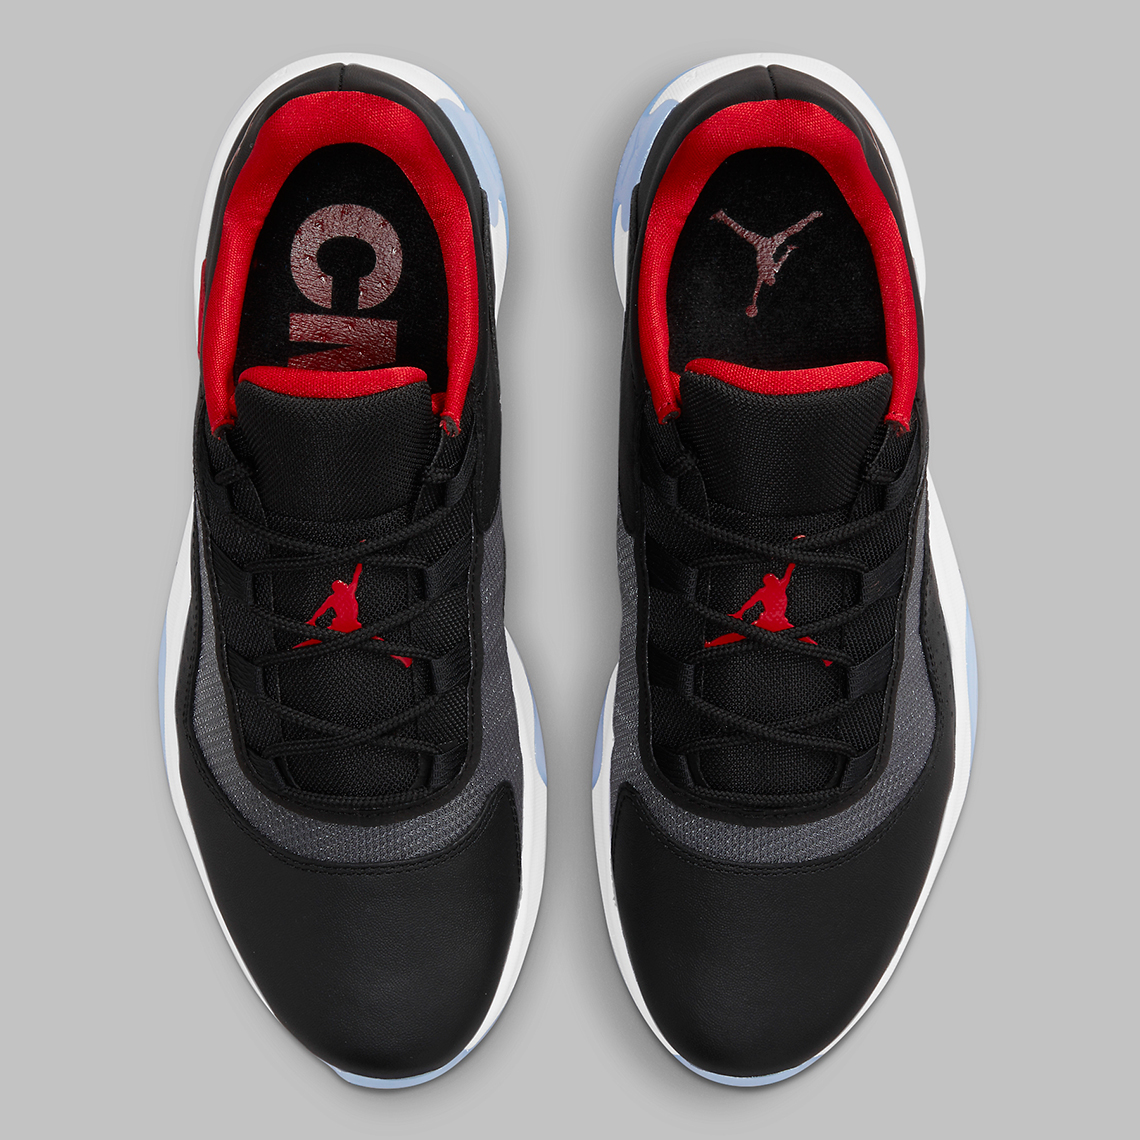 Air Jordan 11 CMFT Low Black Red White CW0784-006 | SneakerNews.com